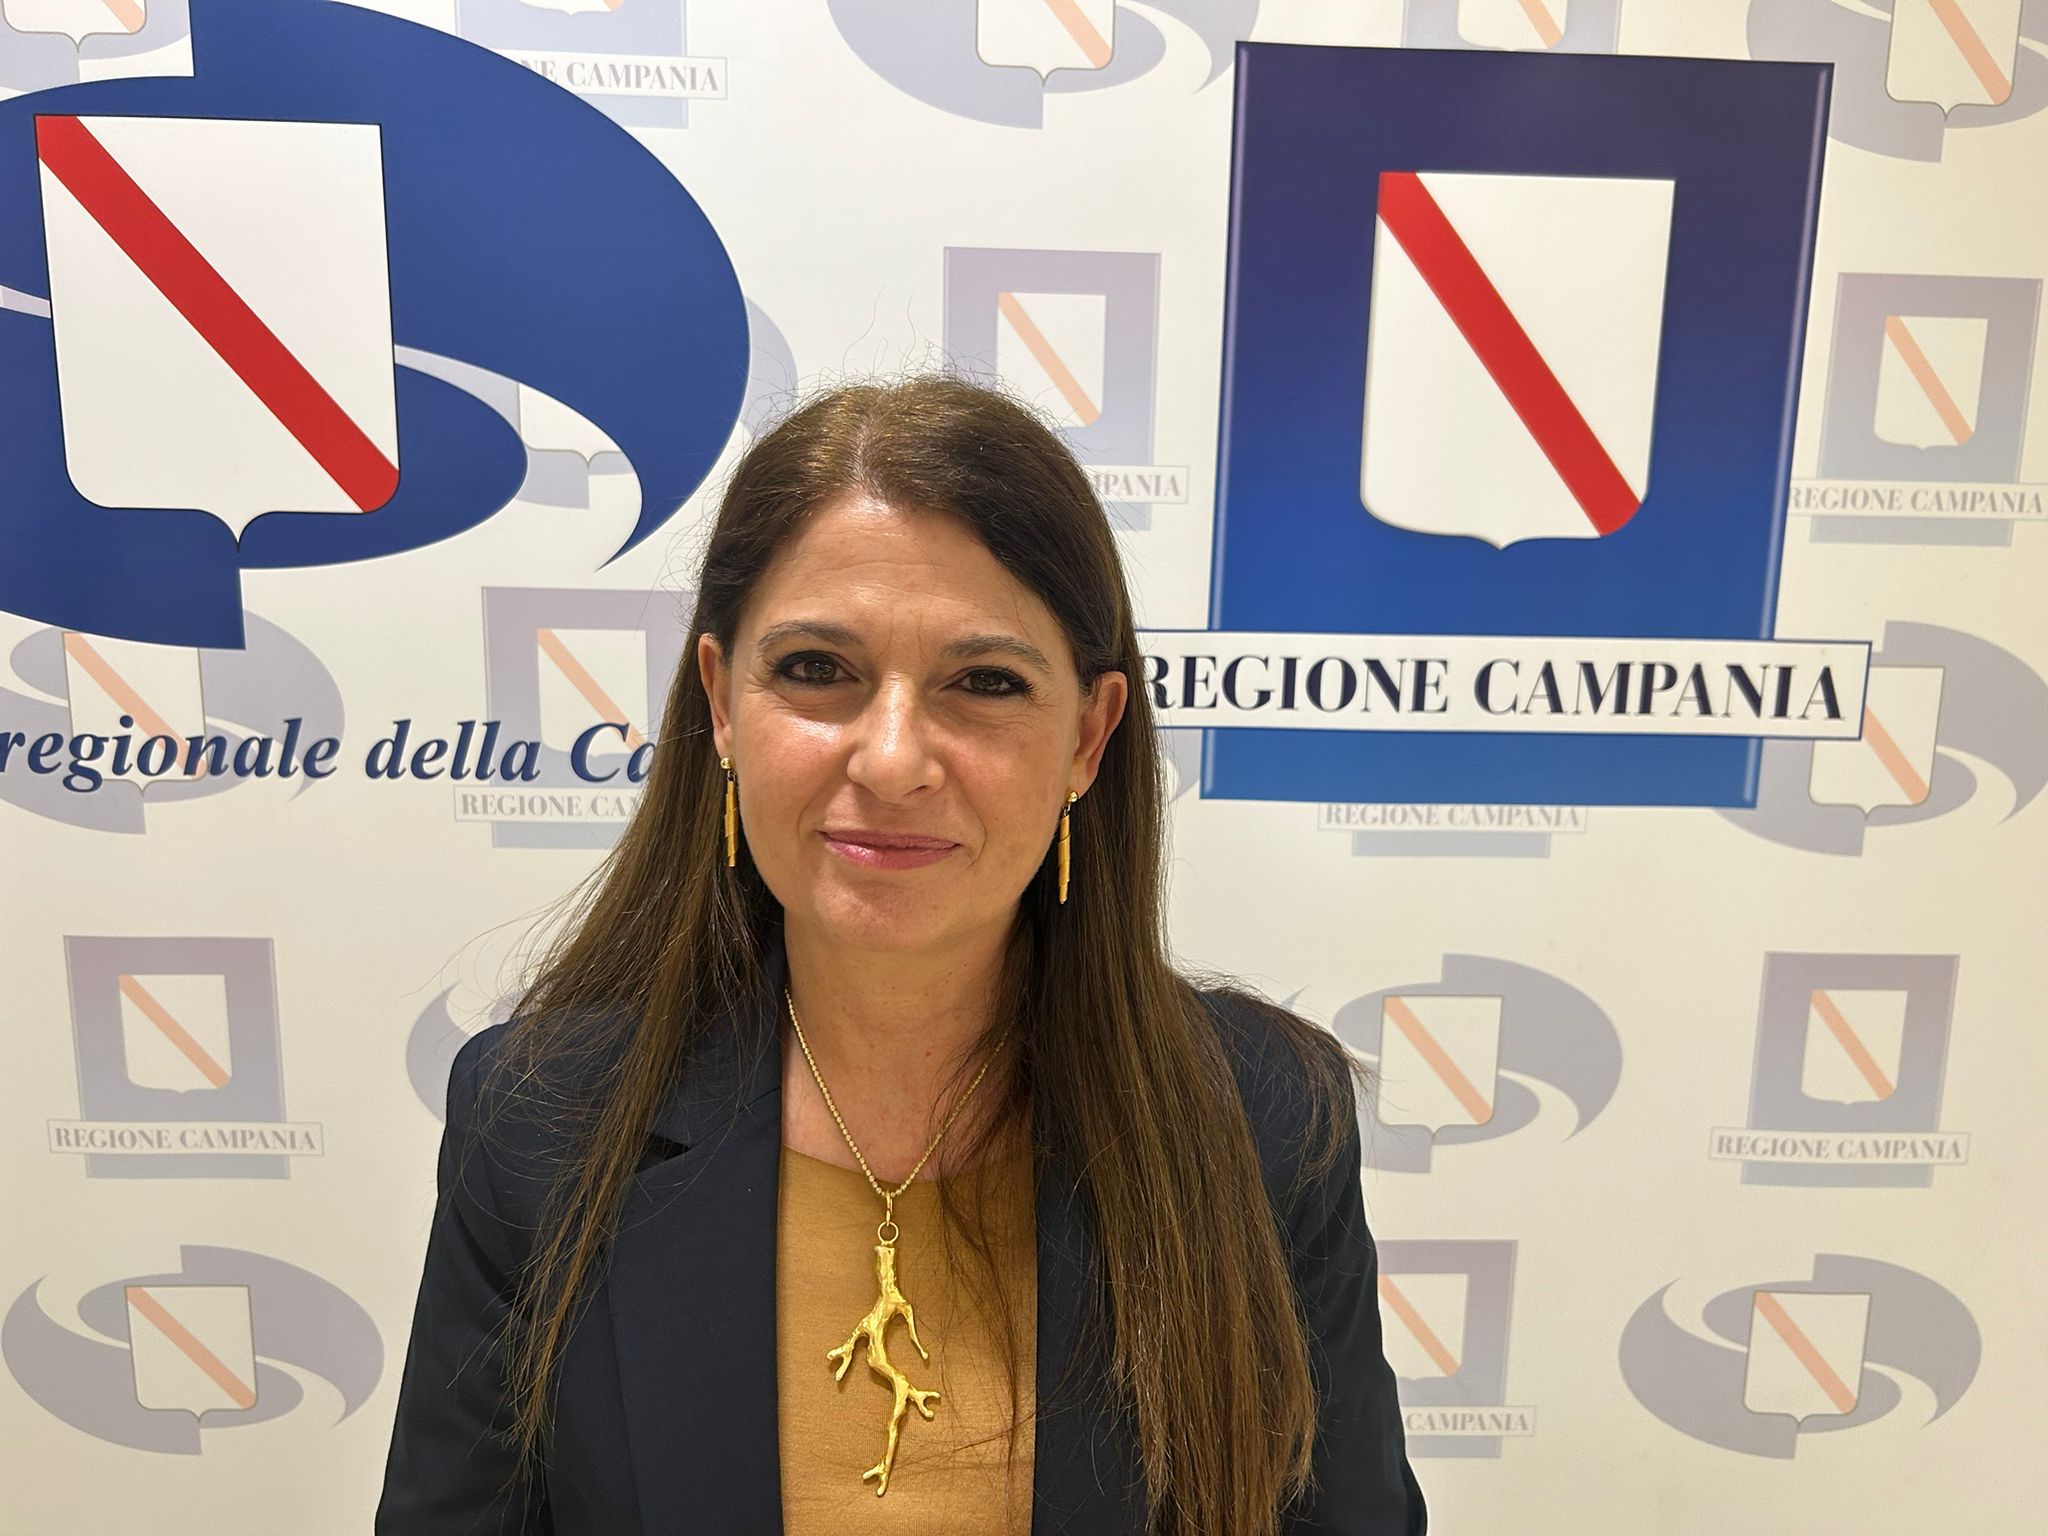 Regione Campania: 8 Marzo, consigliera Gaeta “Dialogare con nuove generazioni”